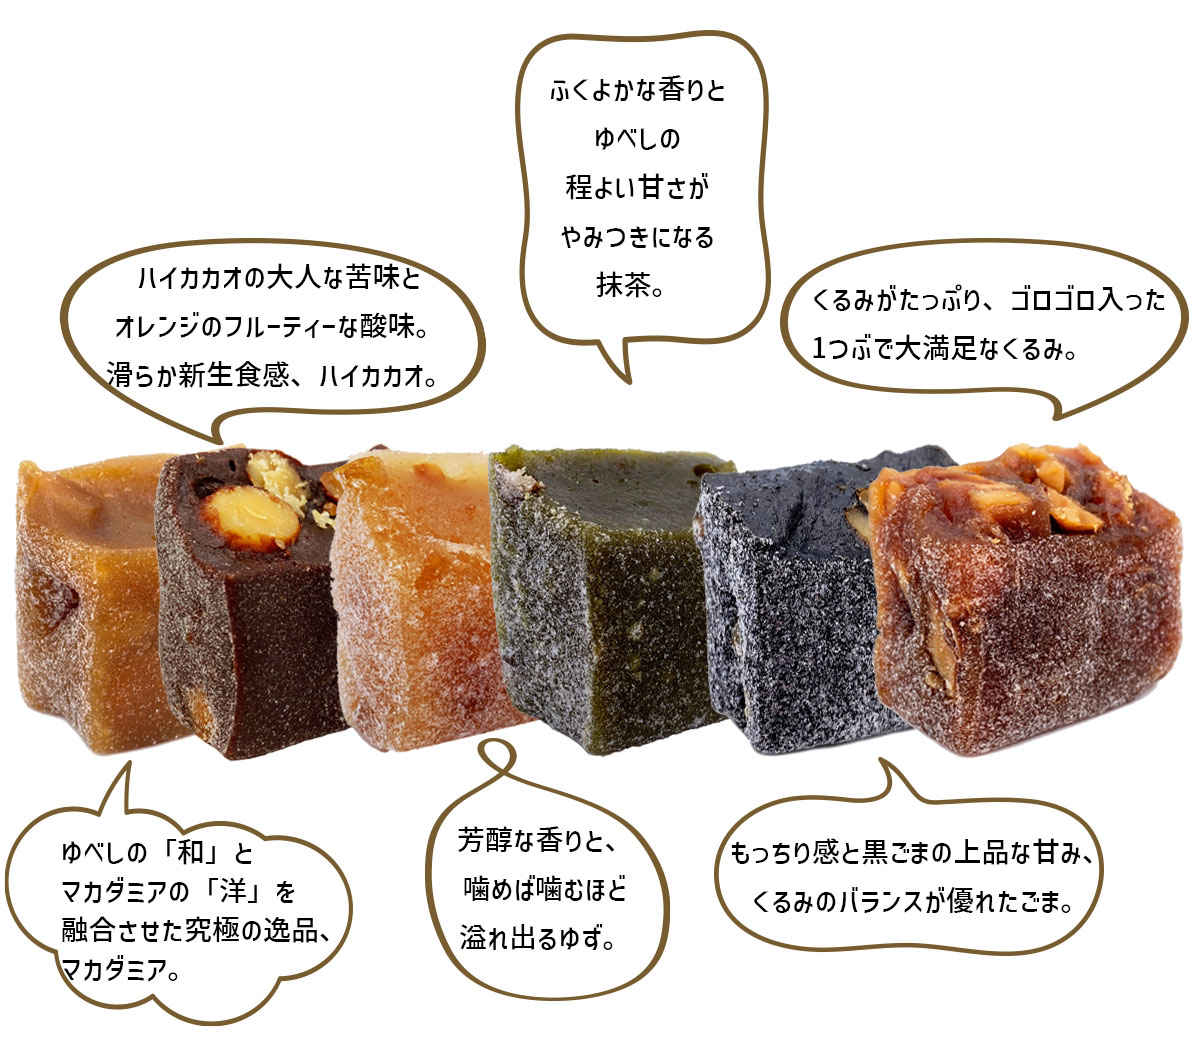  юбэси японские сладости ... юбэси - кальмар kao macadamia конфеты подарок .... можно выбрать happy подарок комплект бесплатная доставка 1,220 иен 